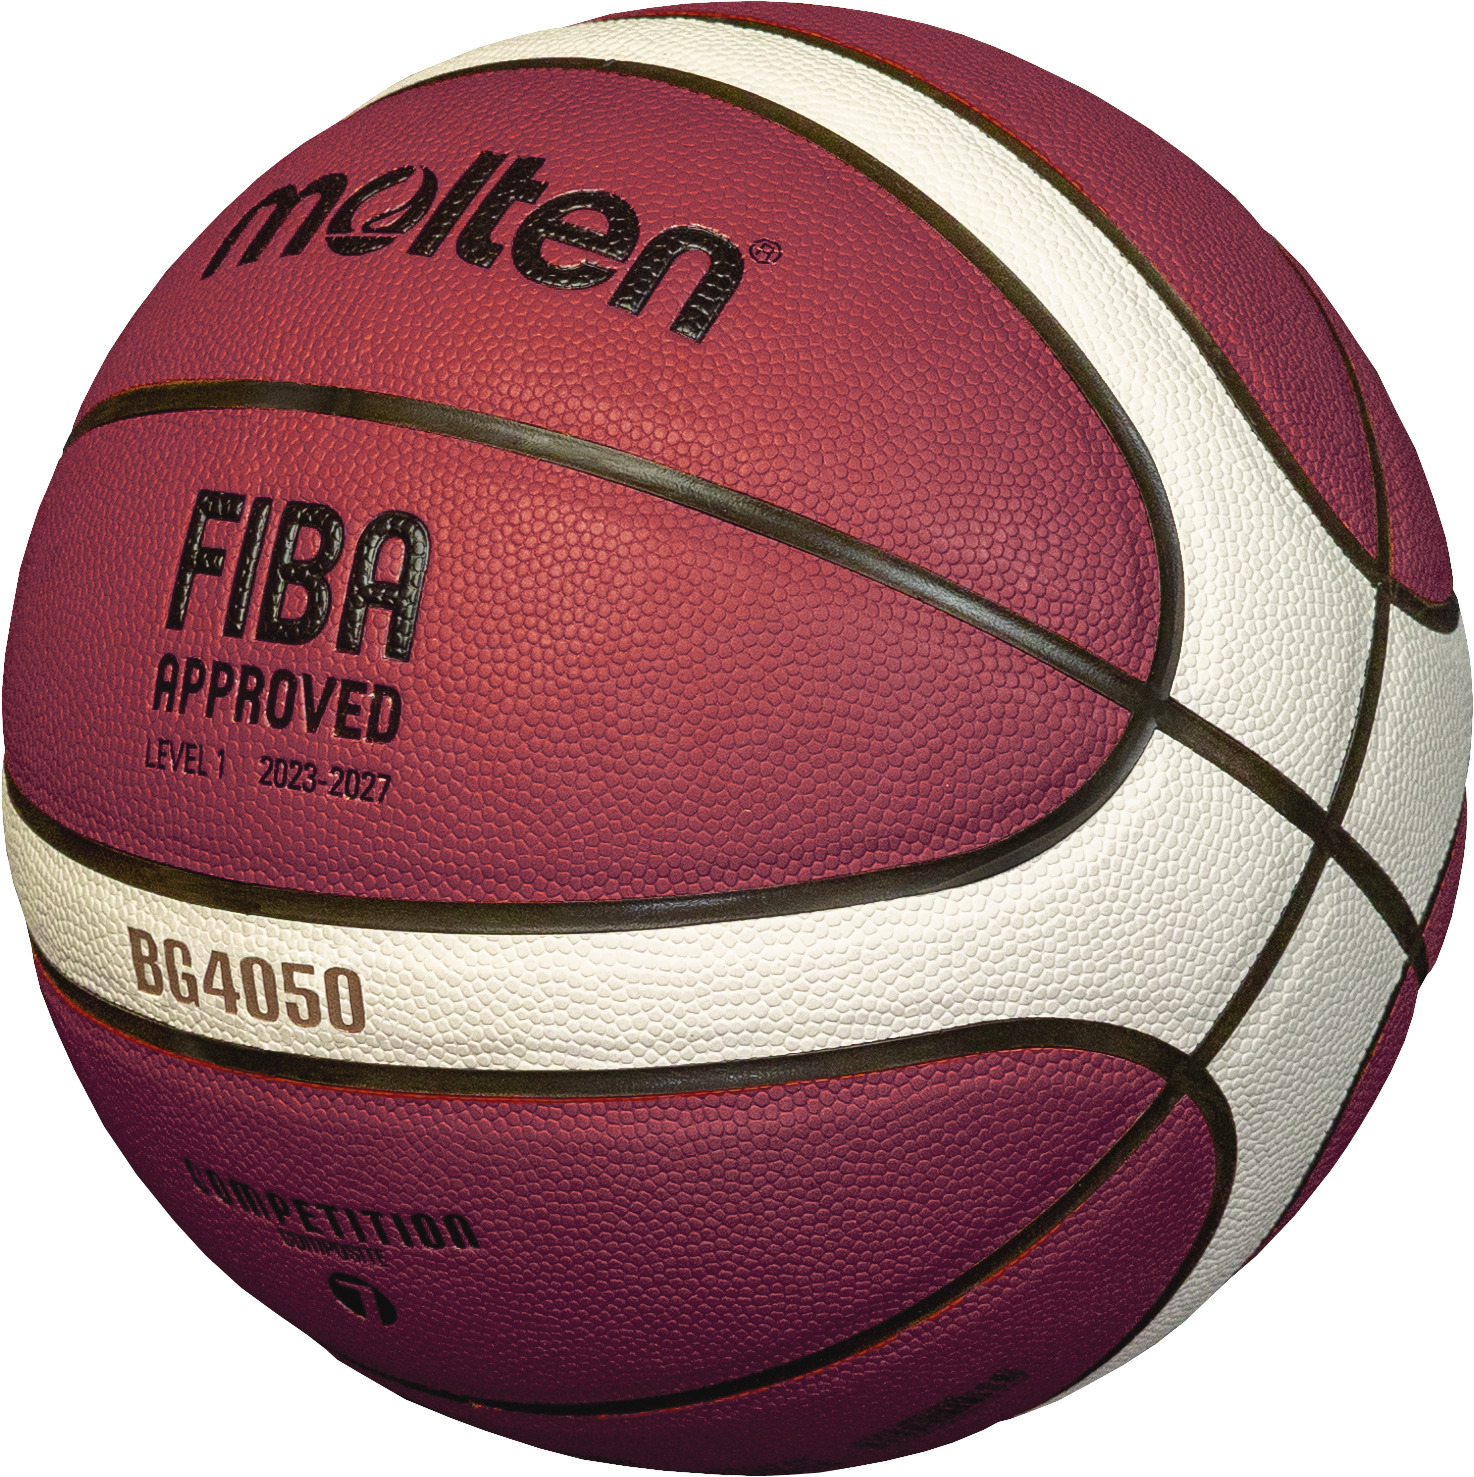 Molten B6G4050-DBB Basketball